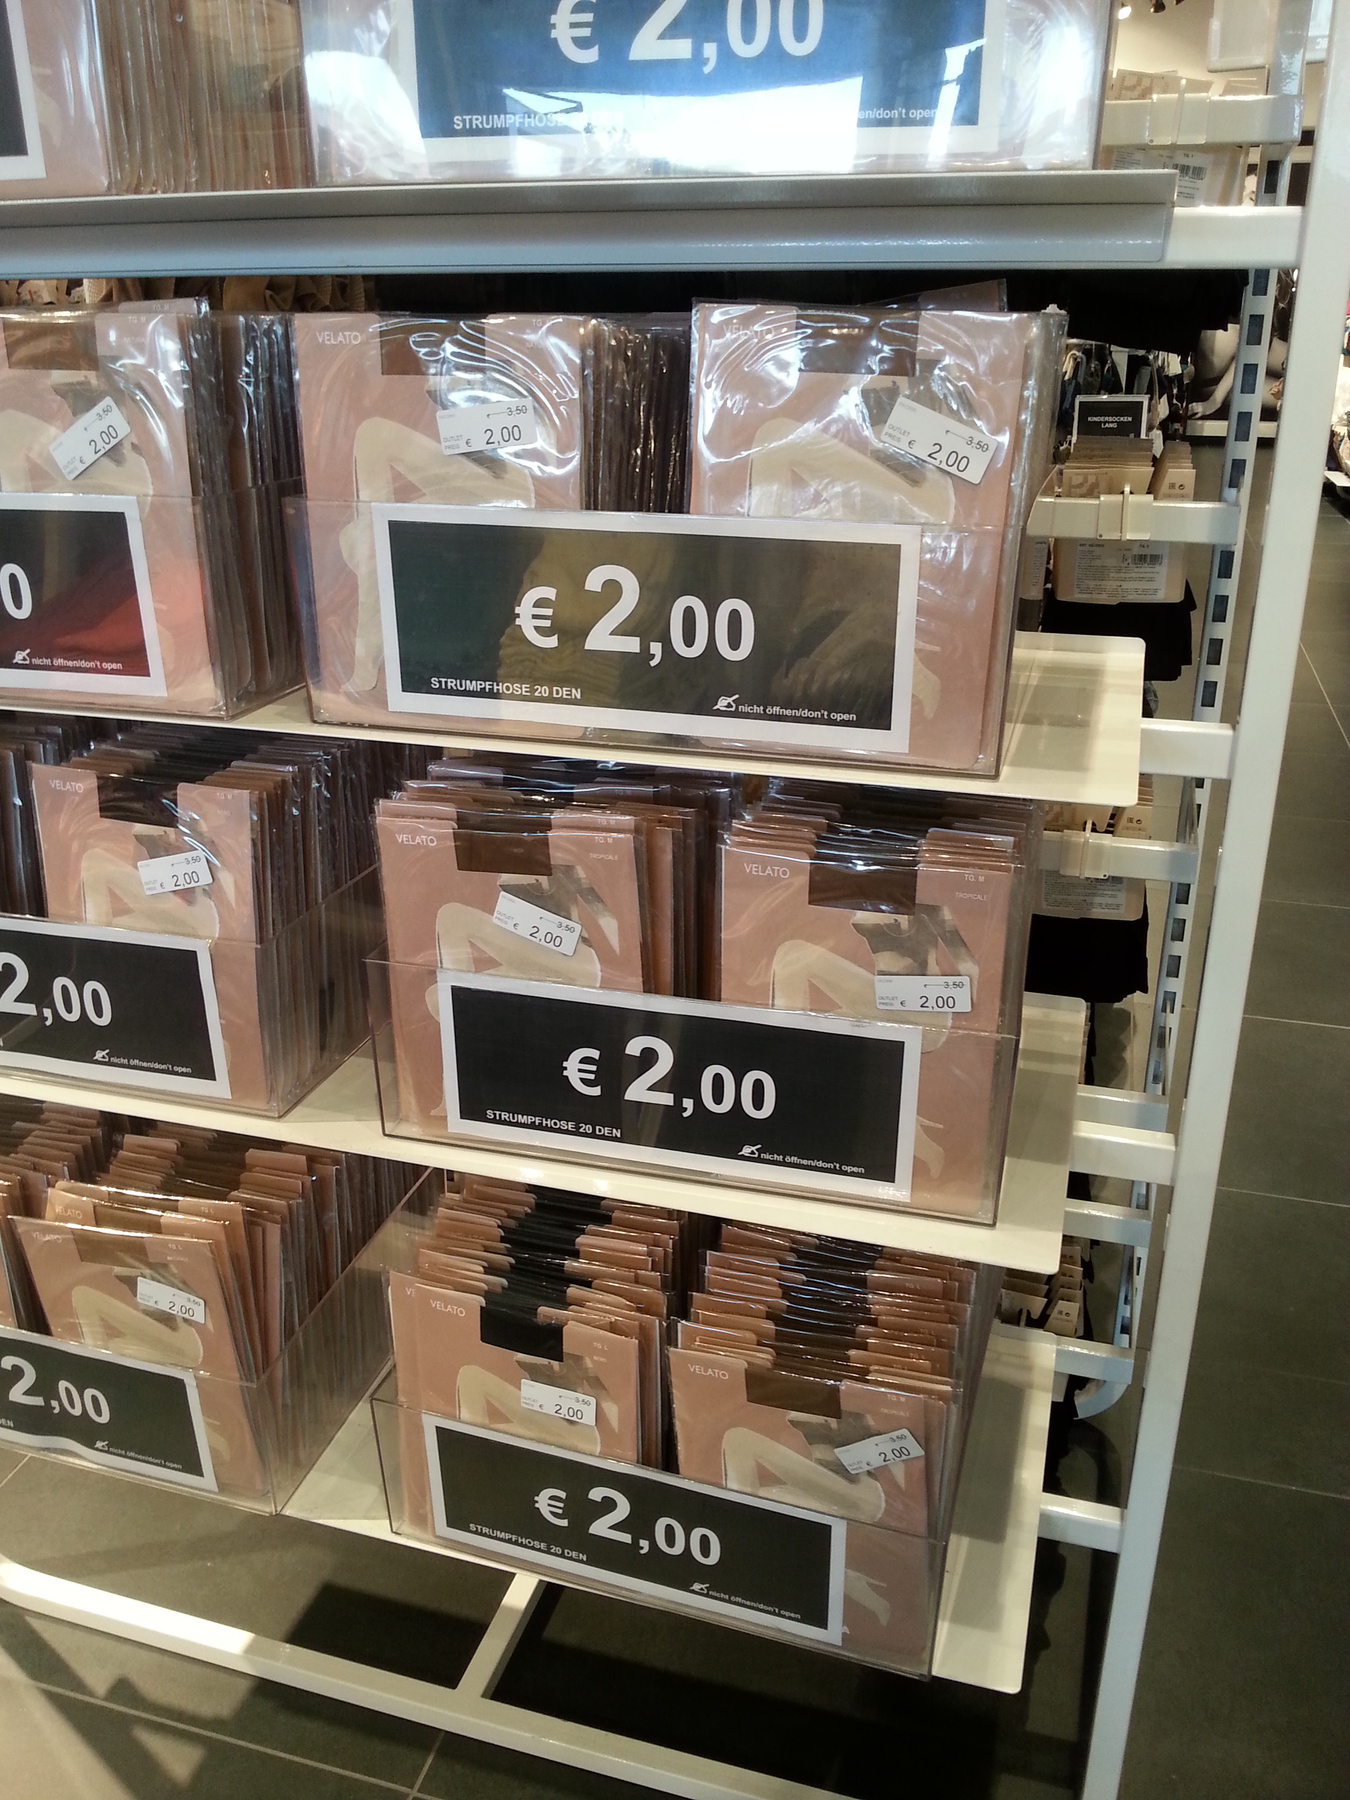 Calvin Klein outlet: ha a márka a lényeg, strapabíró, lila szatyrot is vehet, ez csak 39 euro.